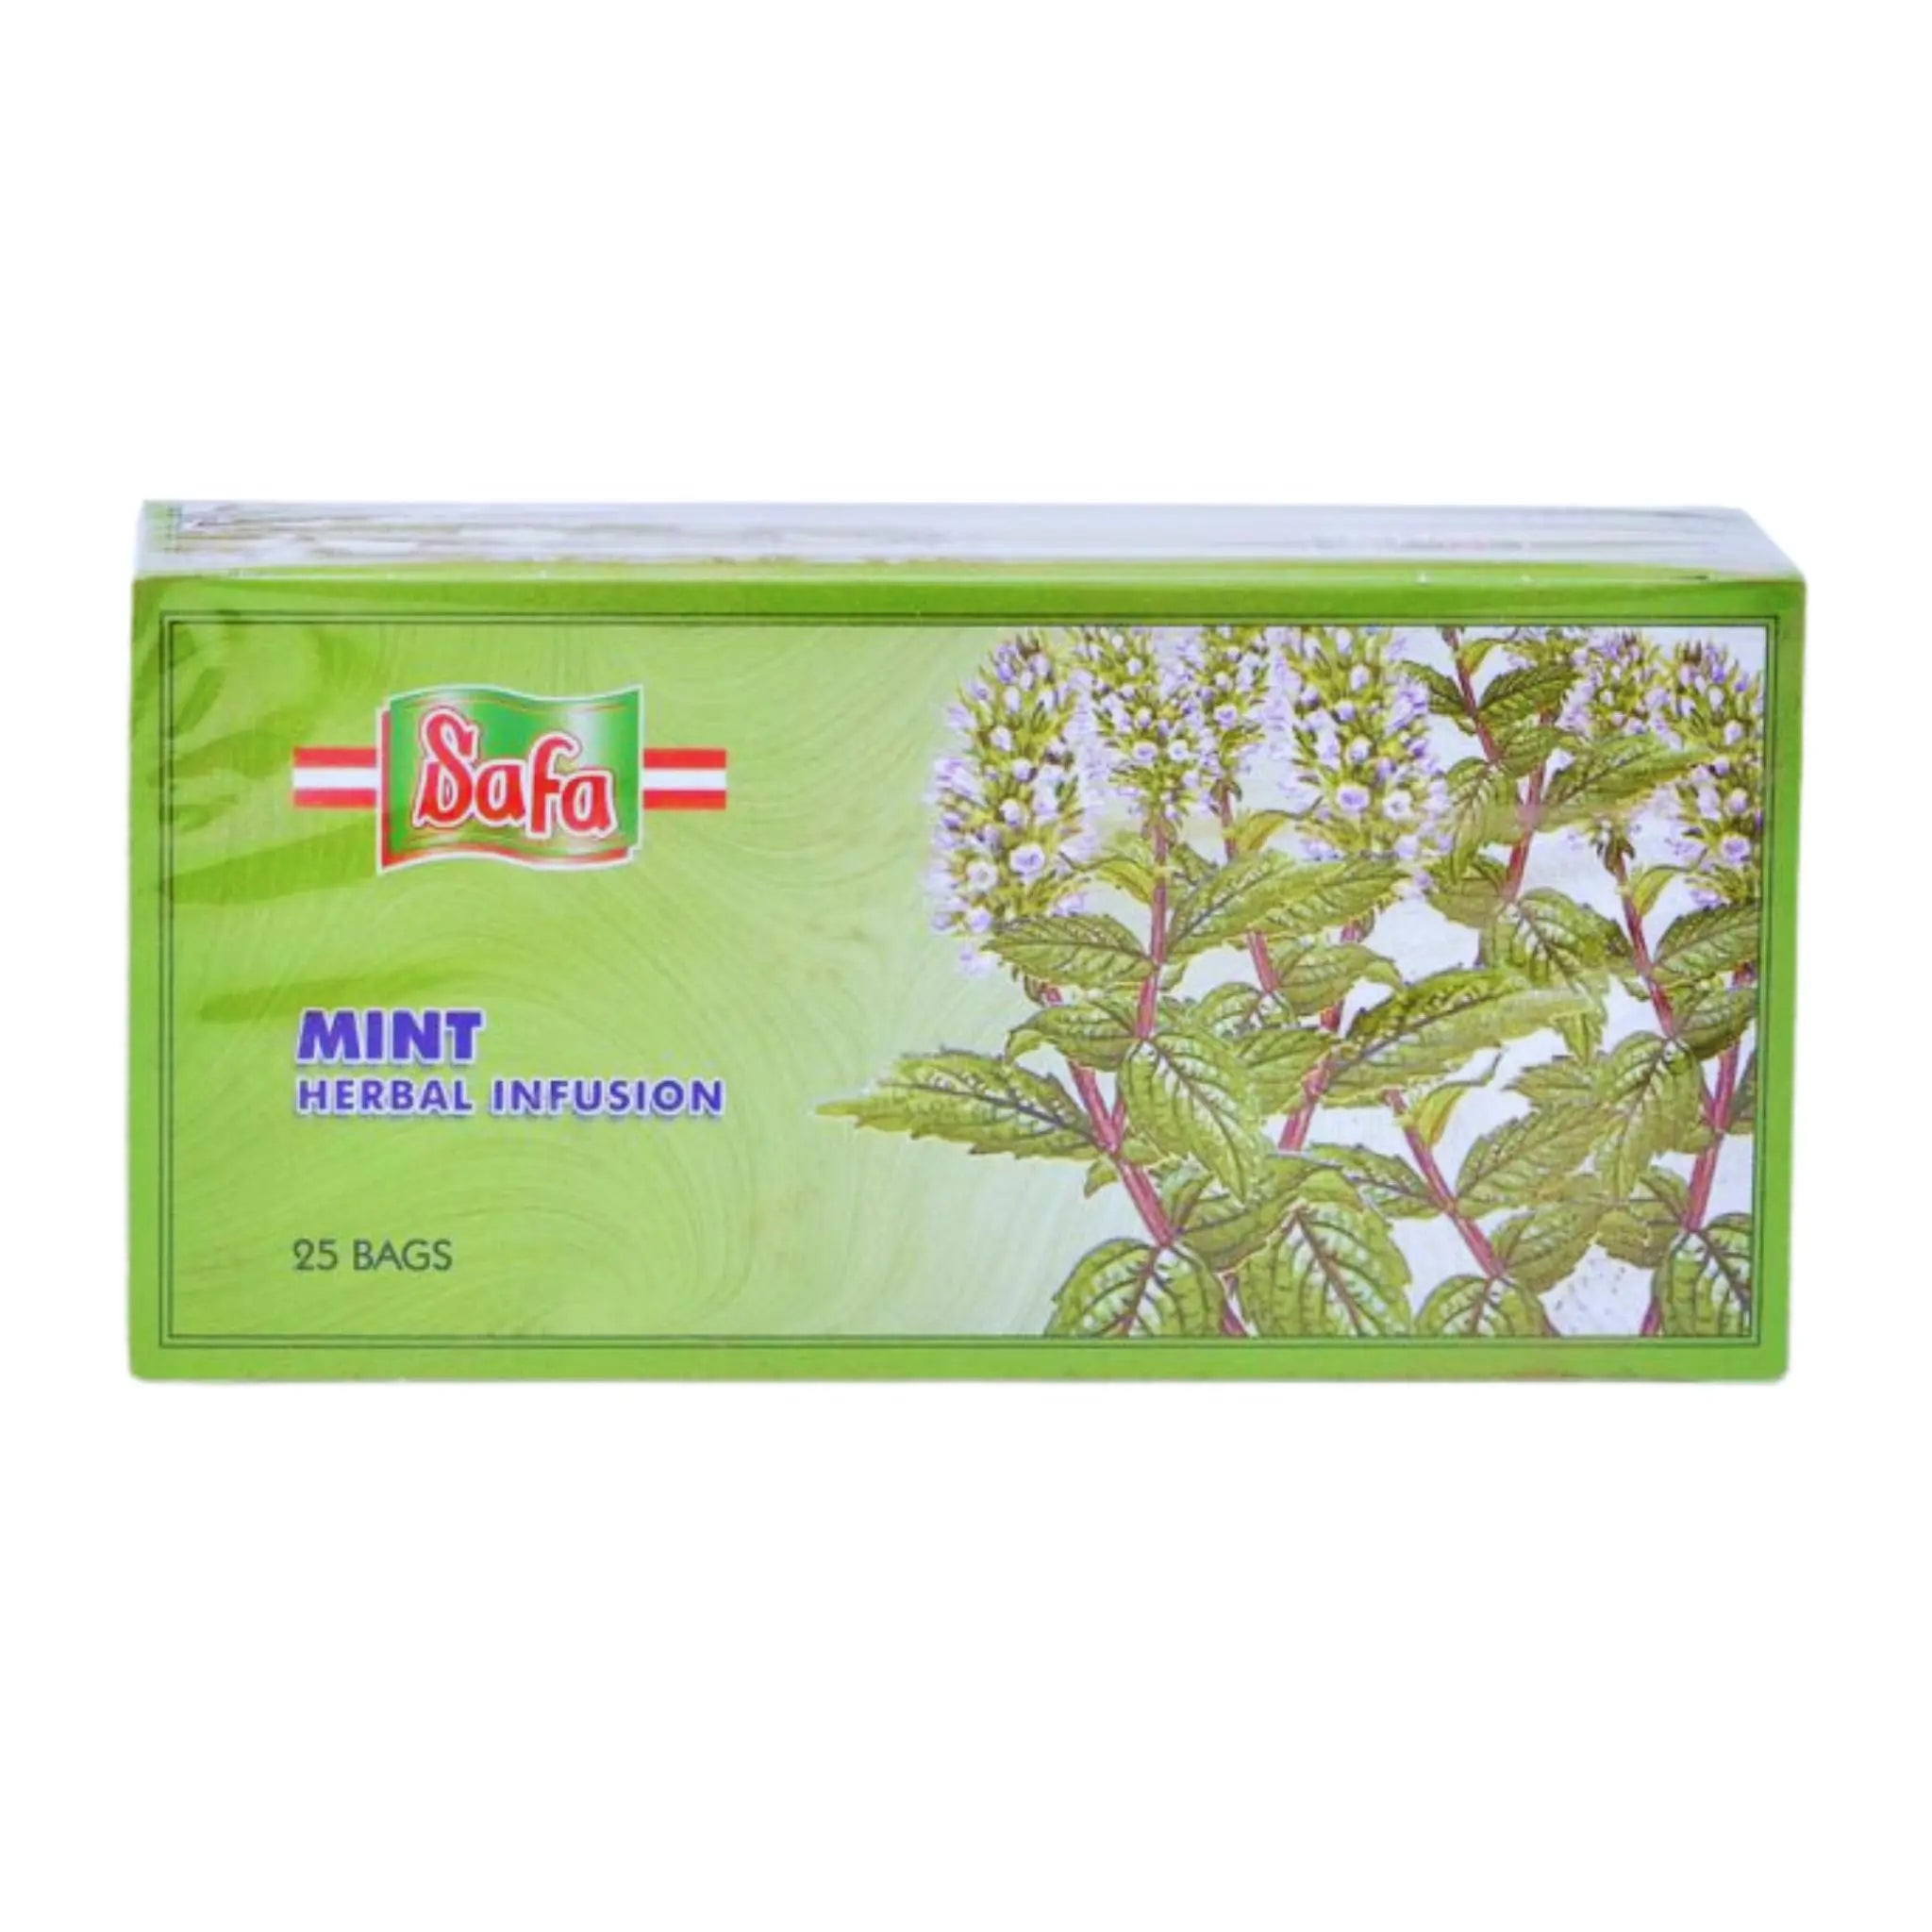 Zahrat Safa Mint Herbal Infusion - 2gx25x36 (1 carton) Marino.AE